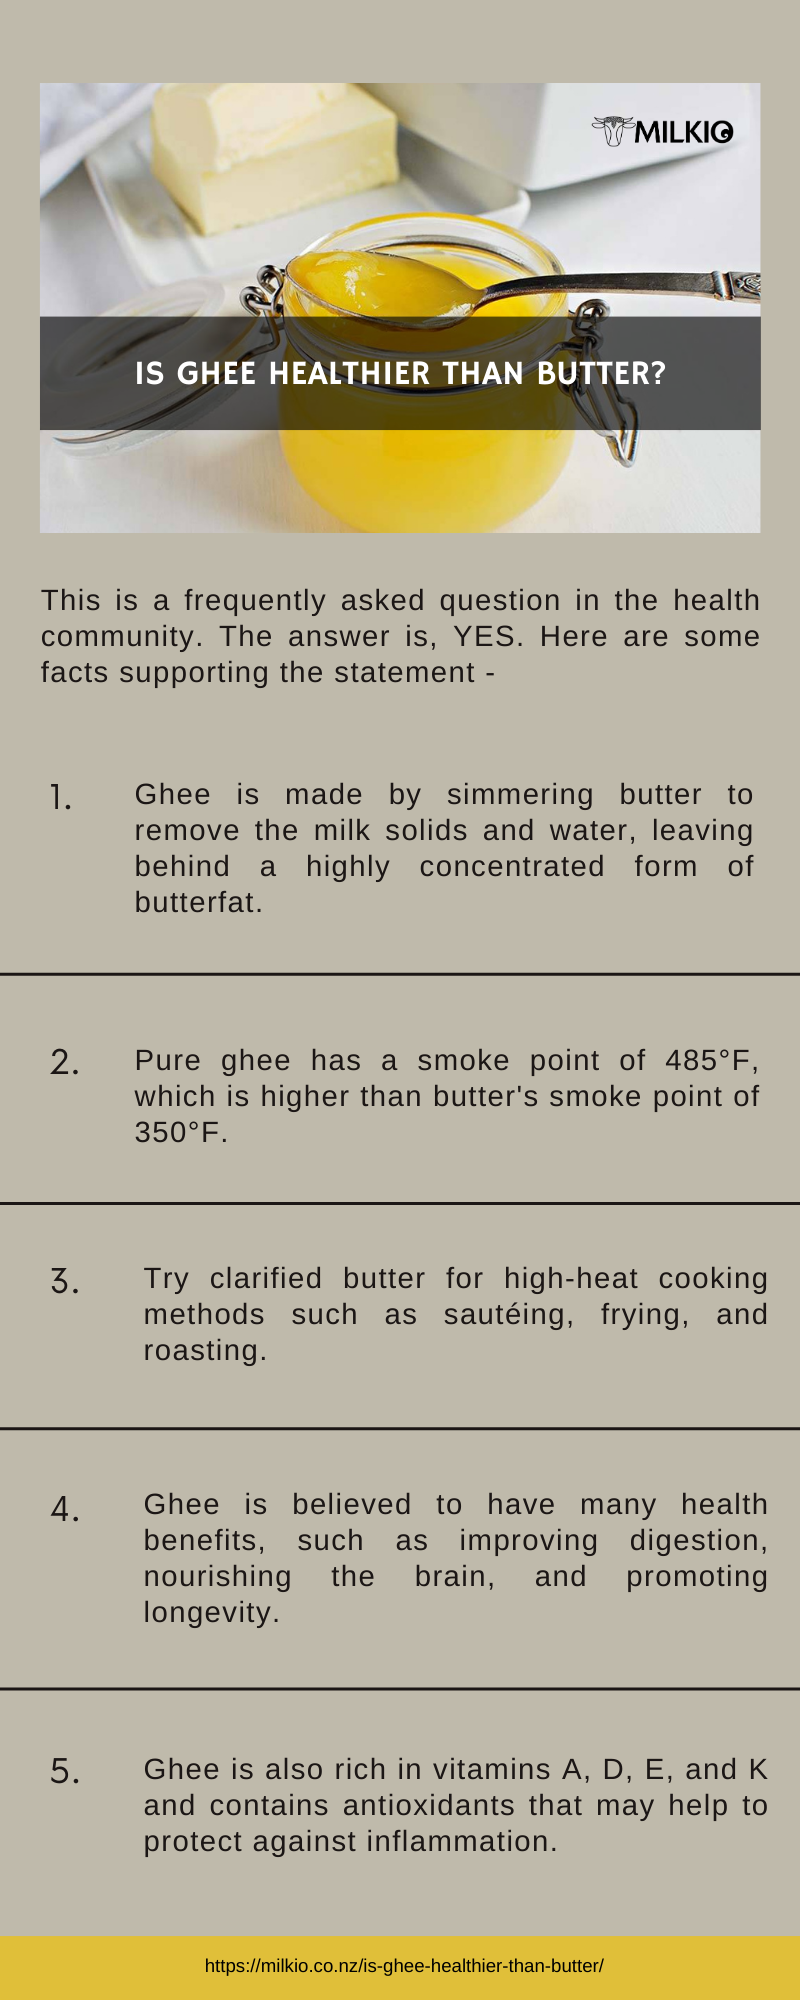 Is Clarified Butter Healthier Than Regular Butter?